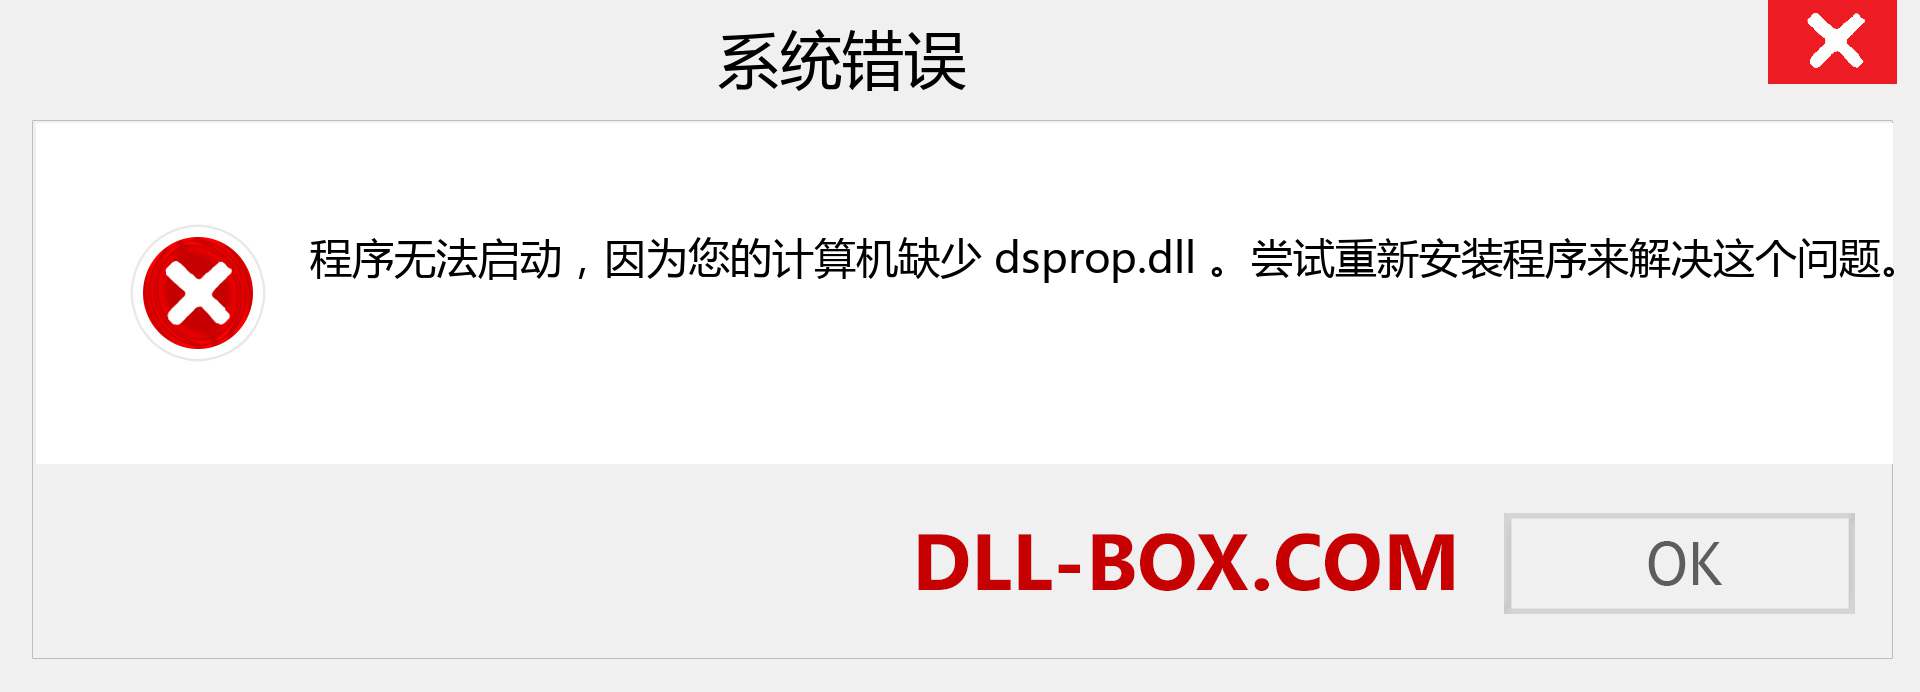 dsprop.dll 文件丢失？。 适用于 Windows 7、8、10 的下载 - 修复 Windows、照片、图像上的 dsprop dll 丢失错误